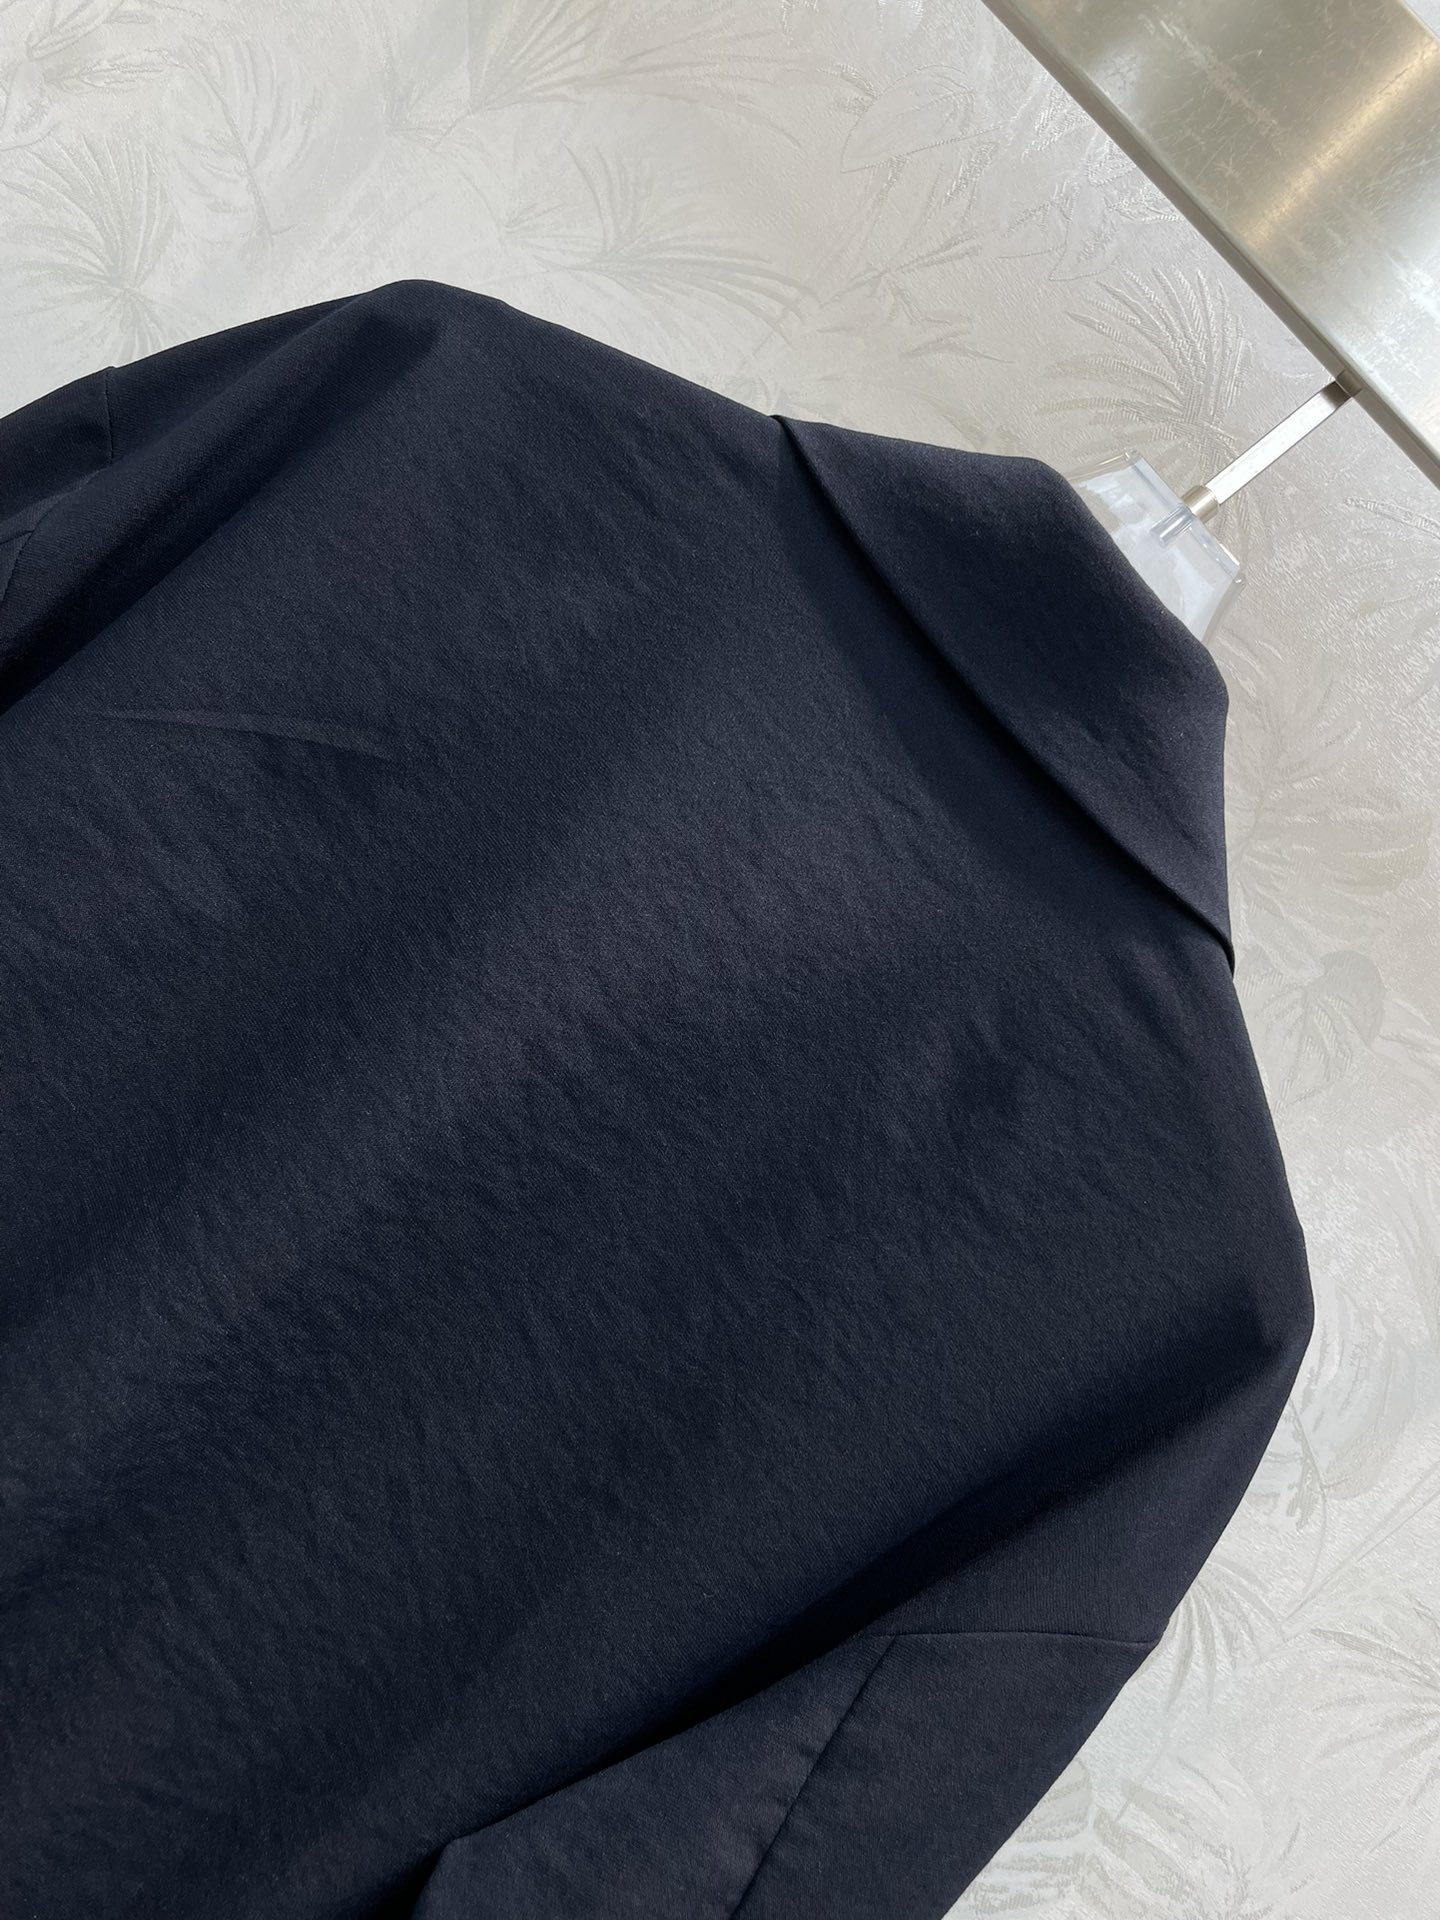 MIU23春夏立领丝棉夹克外套一穿就能出门的款完全不用费心费力搭配气质工装风酷帅有型门襟皱设计胸前双口袋